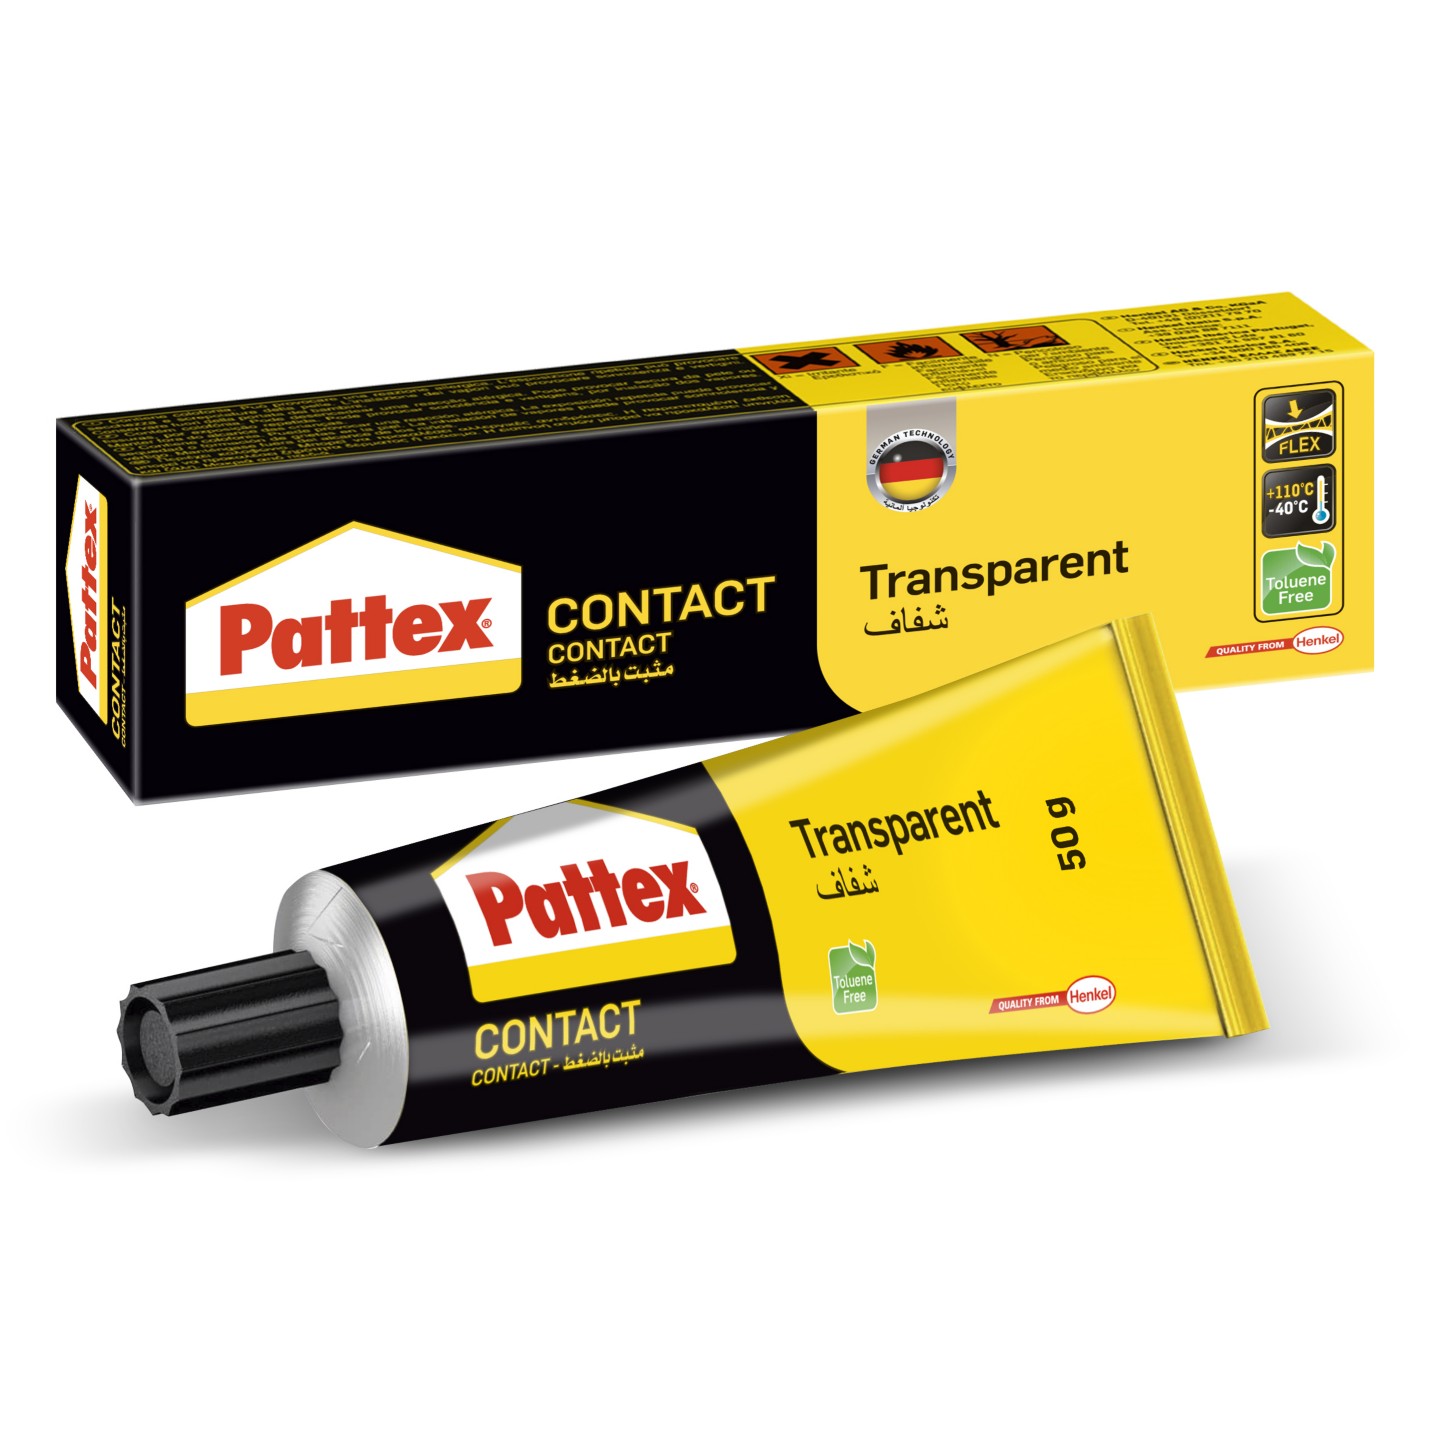 Opitec Espana  Cola de contacto Pattex transparente, 50 g